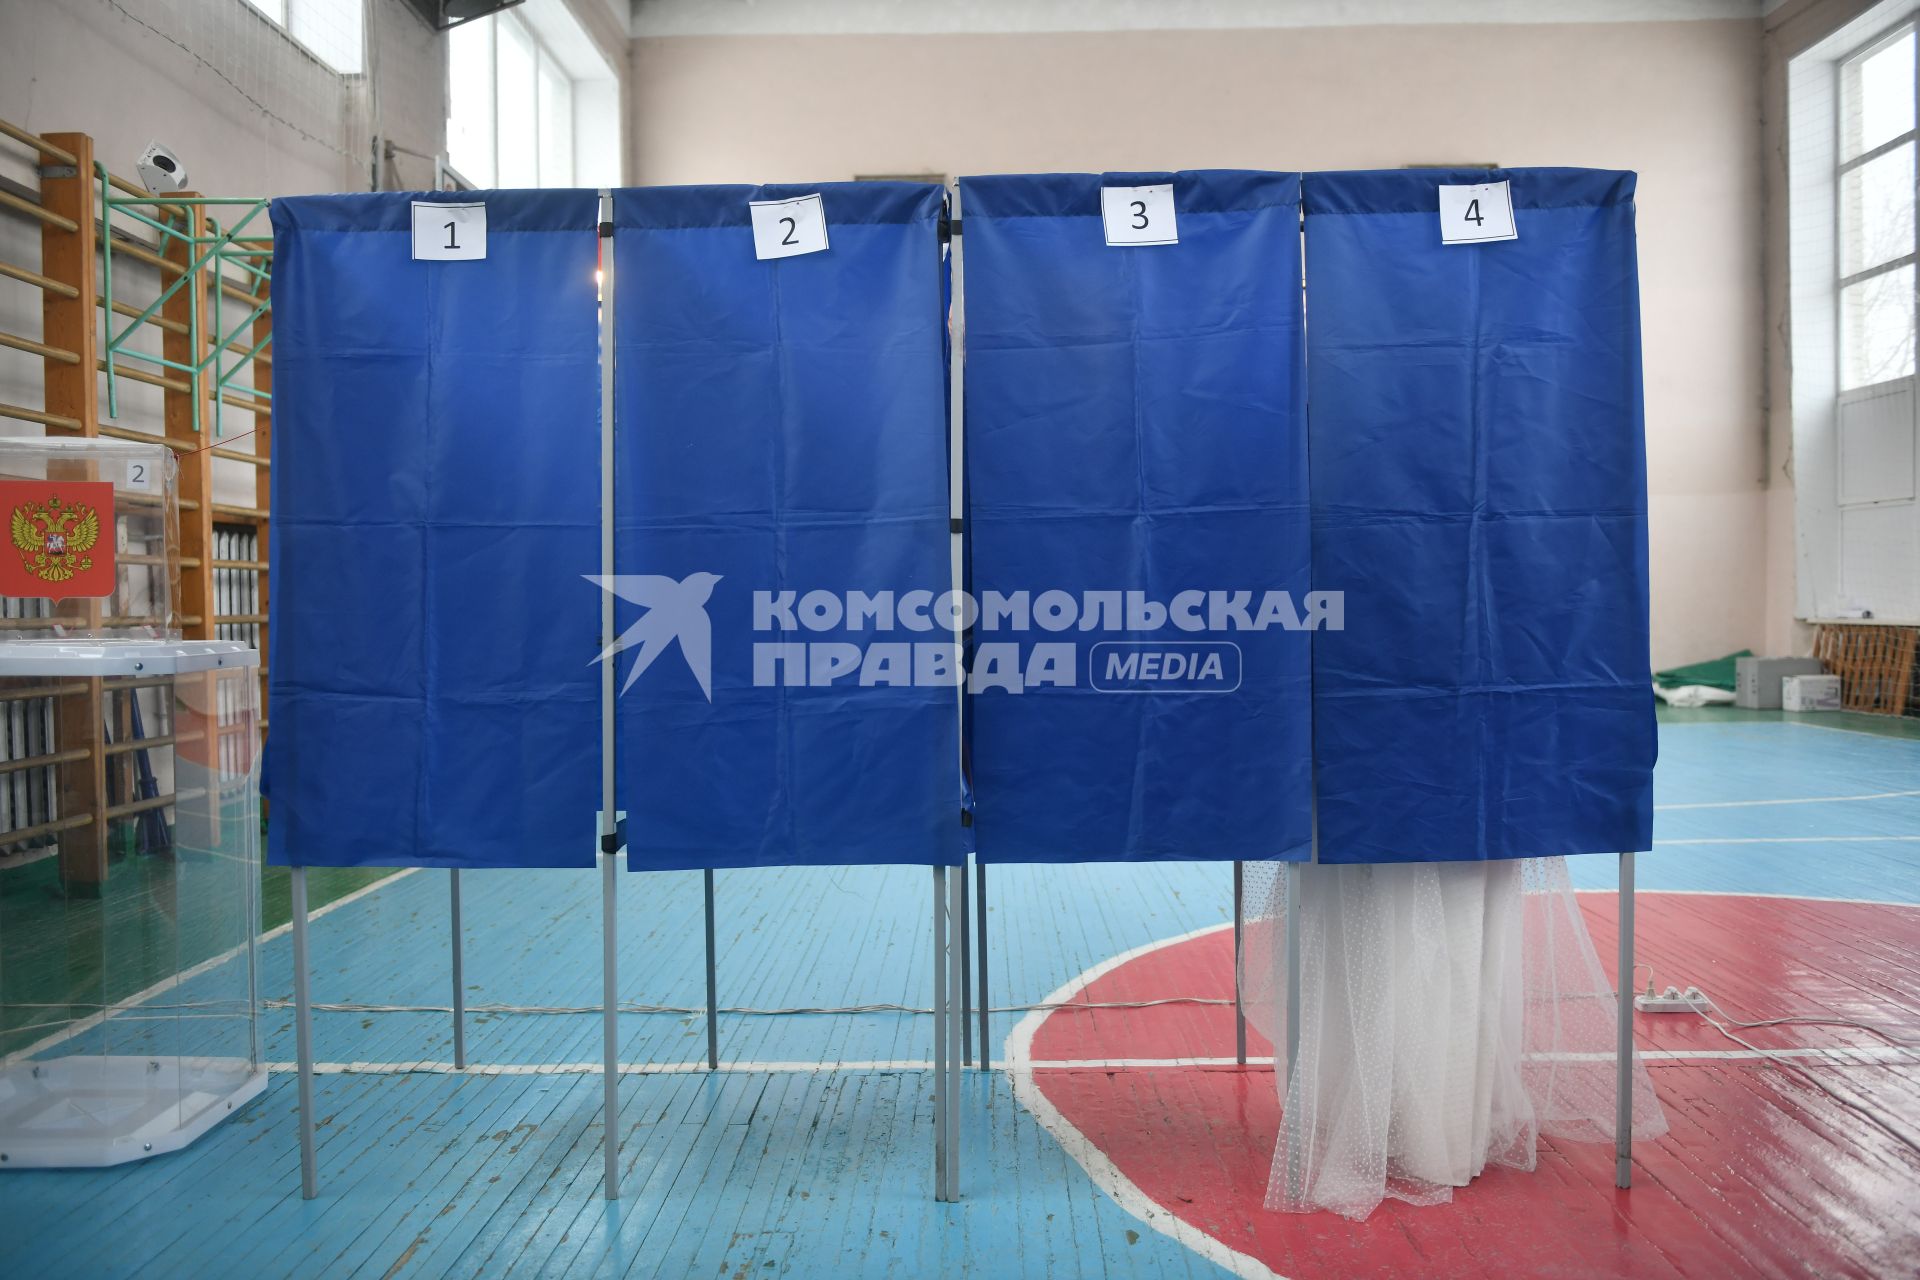 Ход голосования на выборах президента России в Екатеринбурге